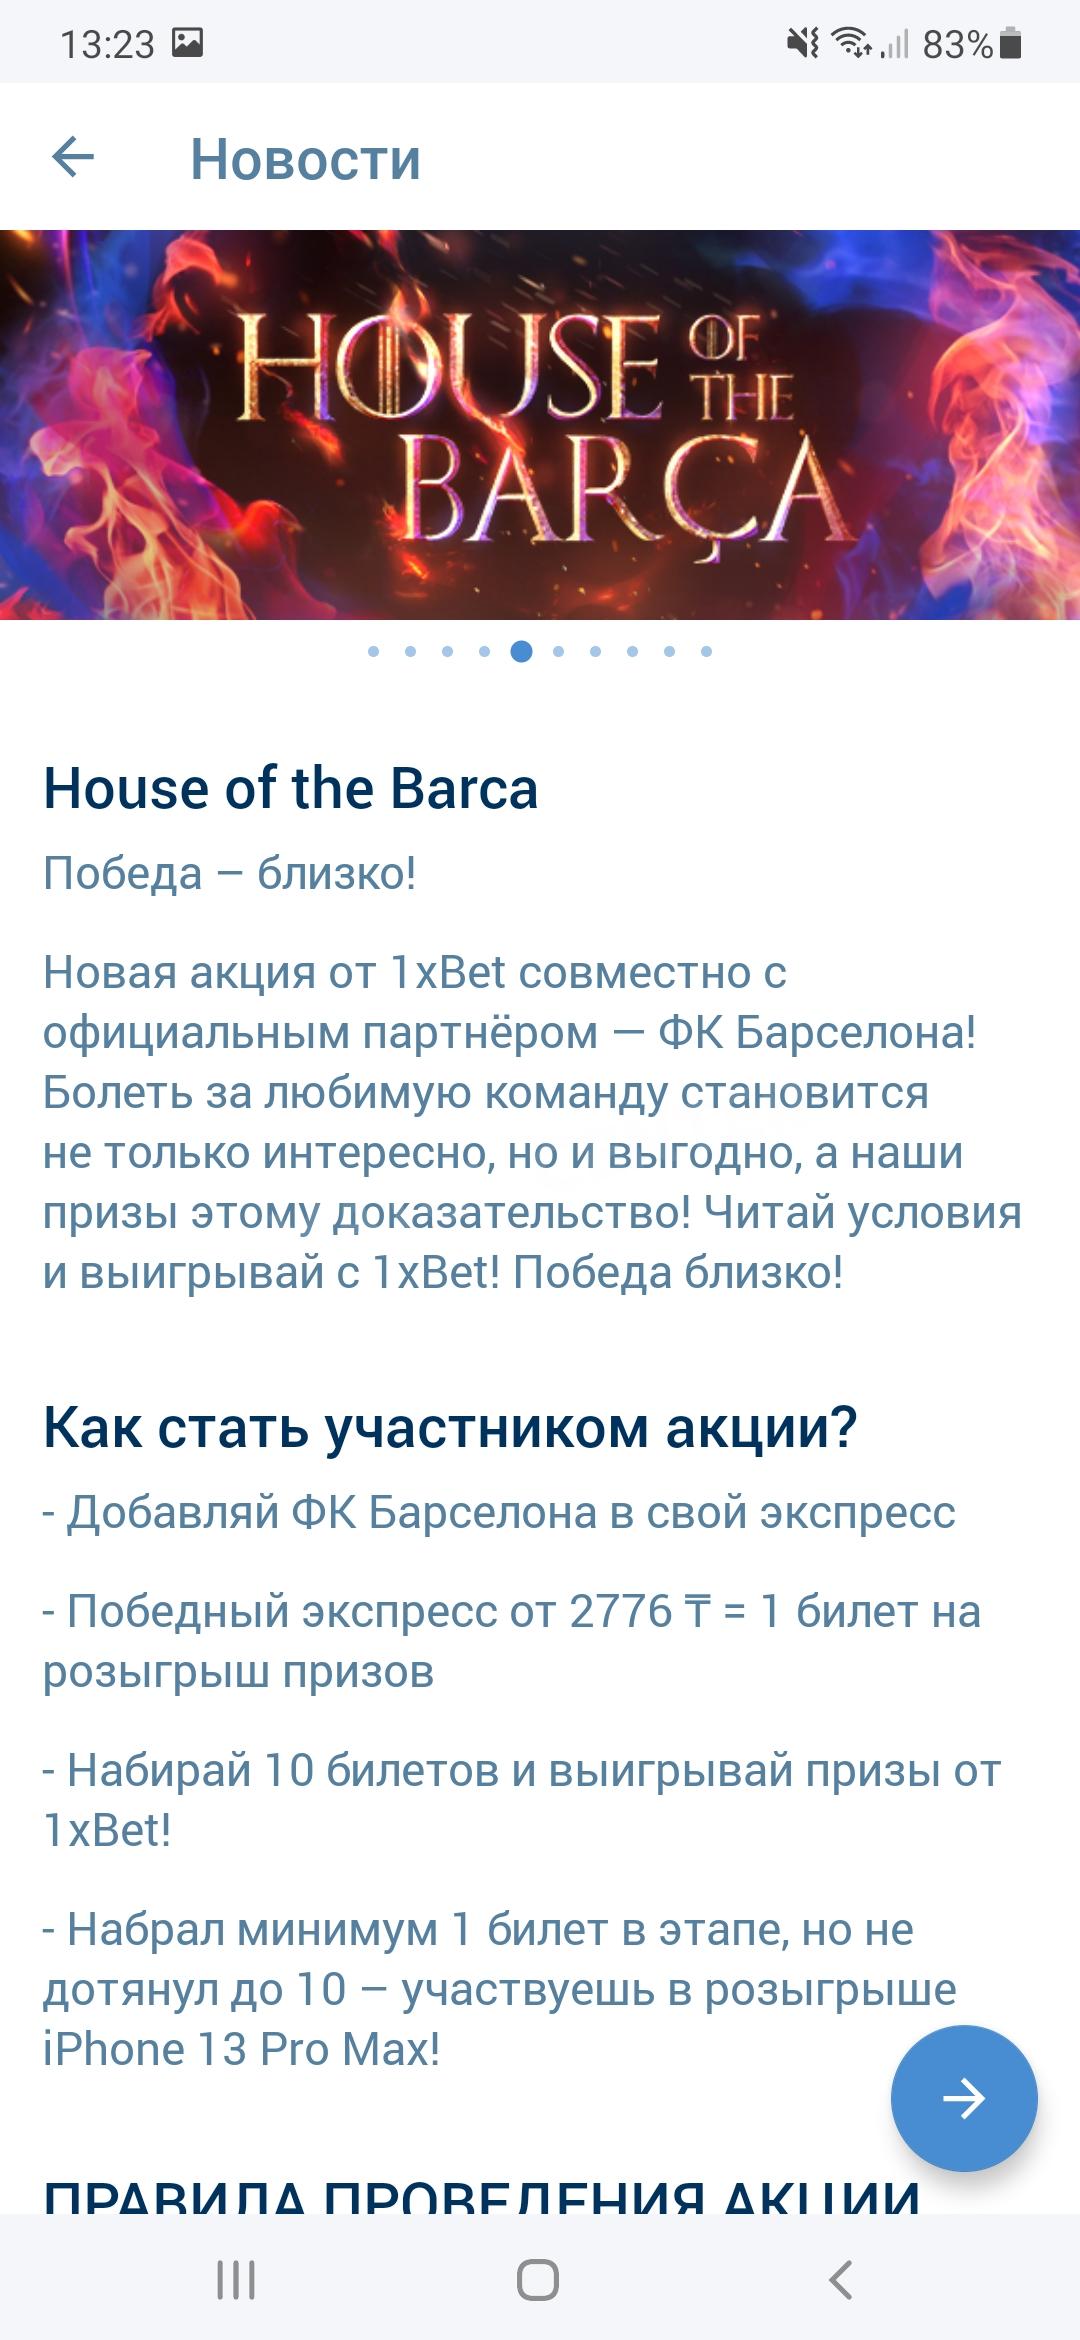 Акция House of Barça